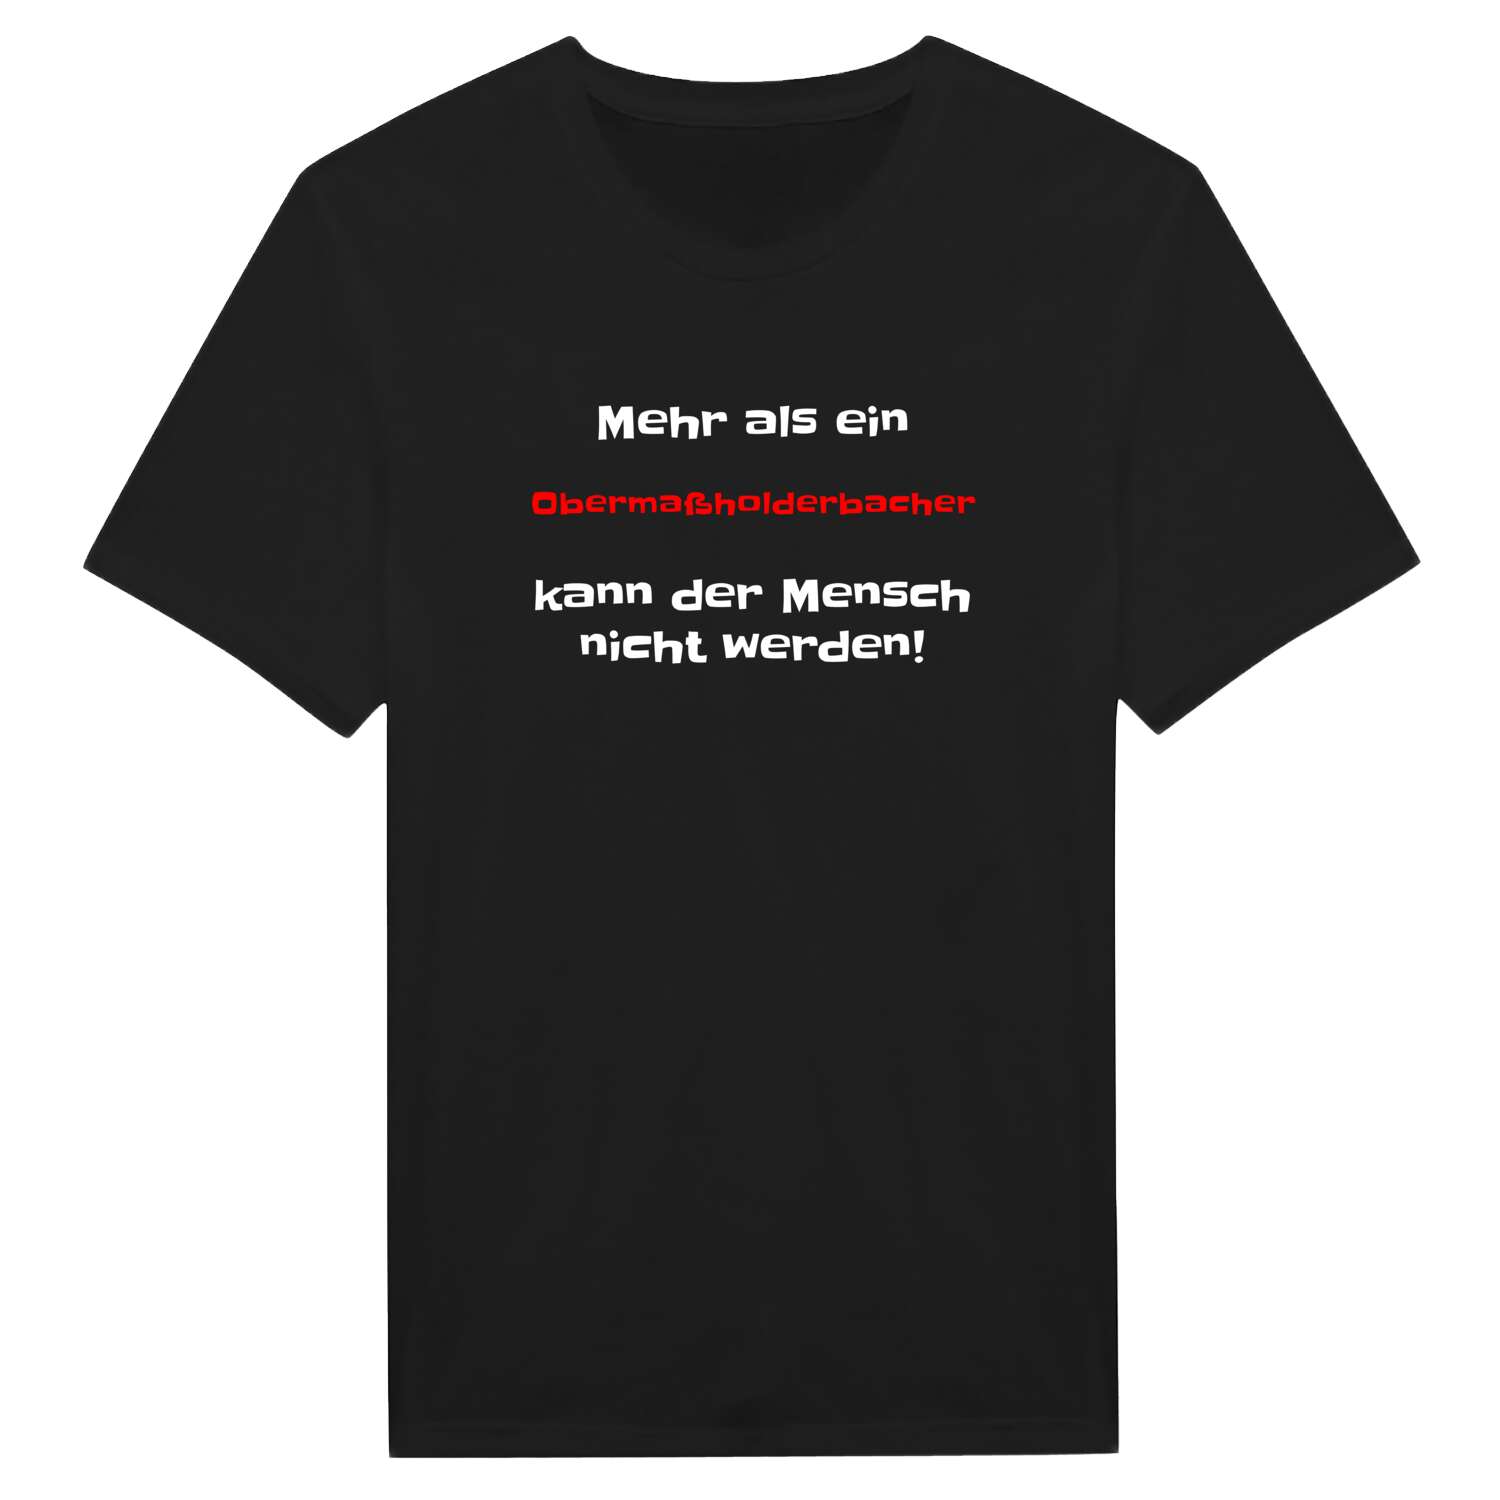 Obermaßholderbach T-Shirt »Mehr als ein«